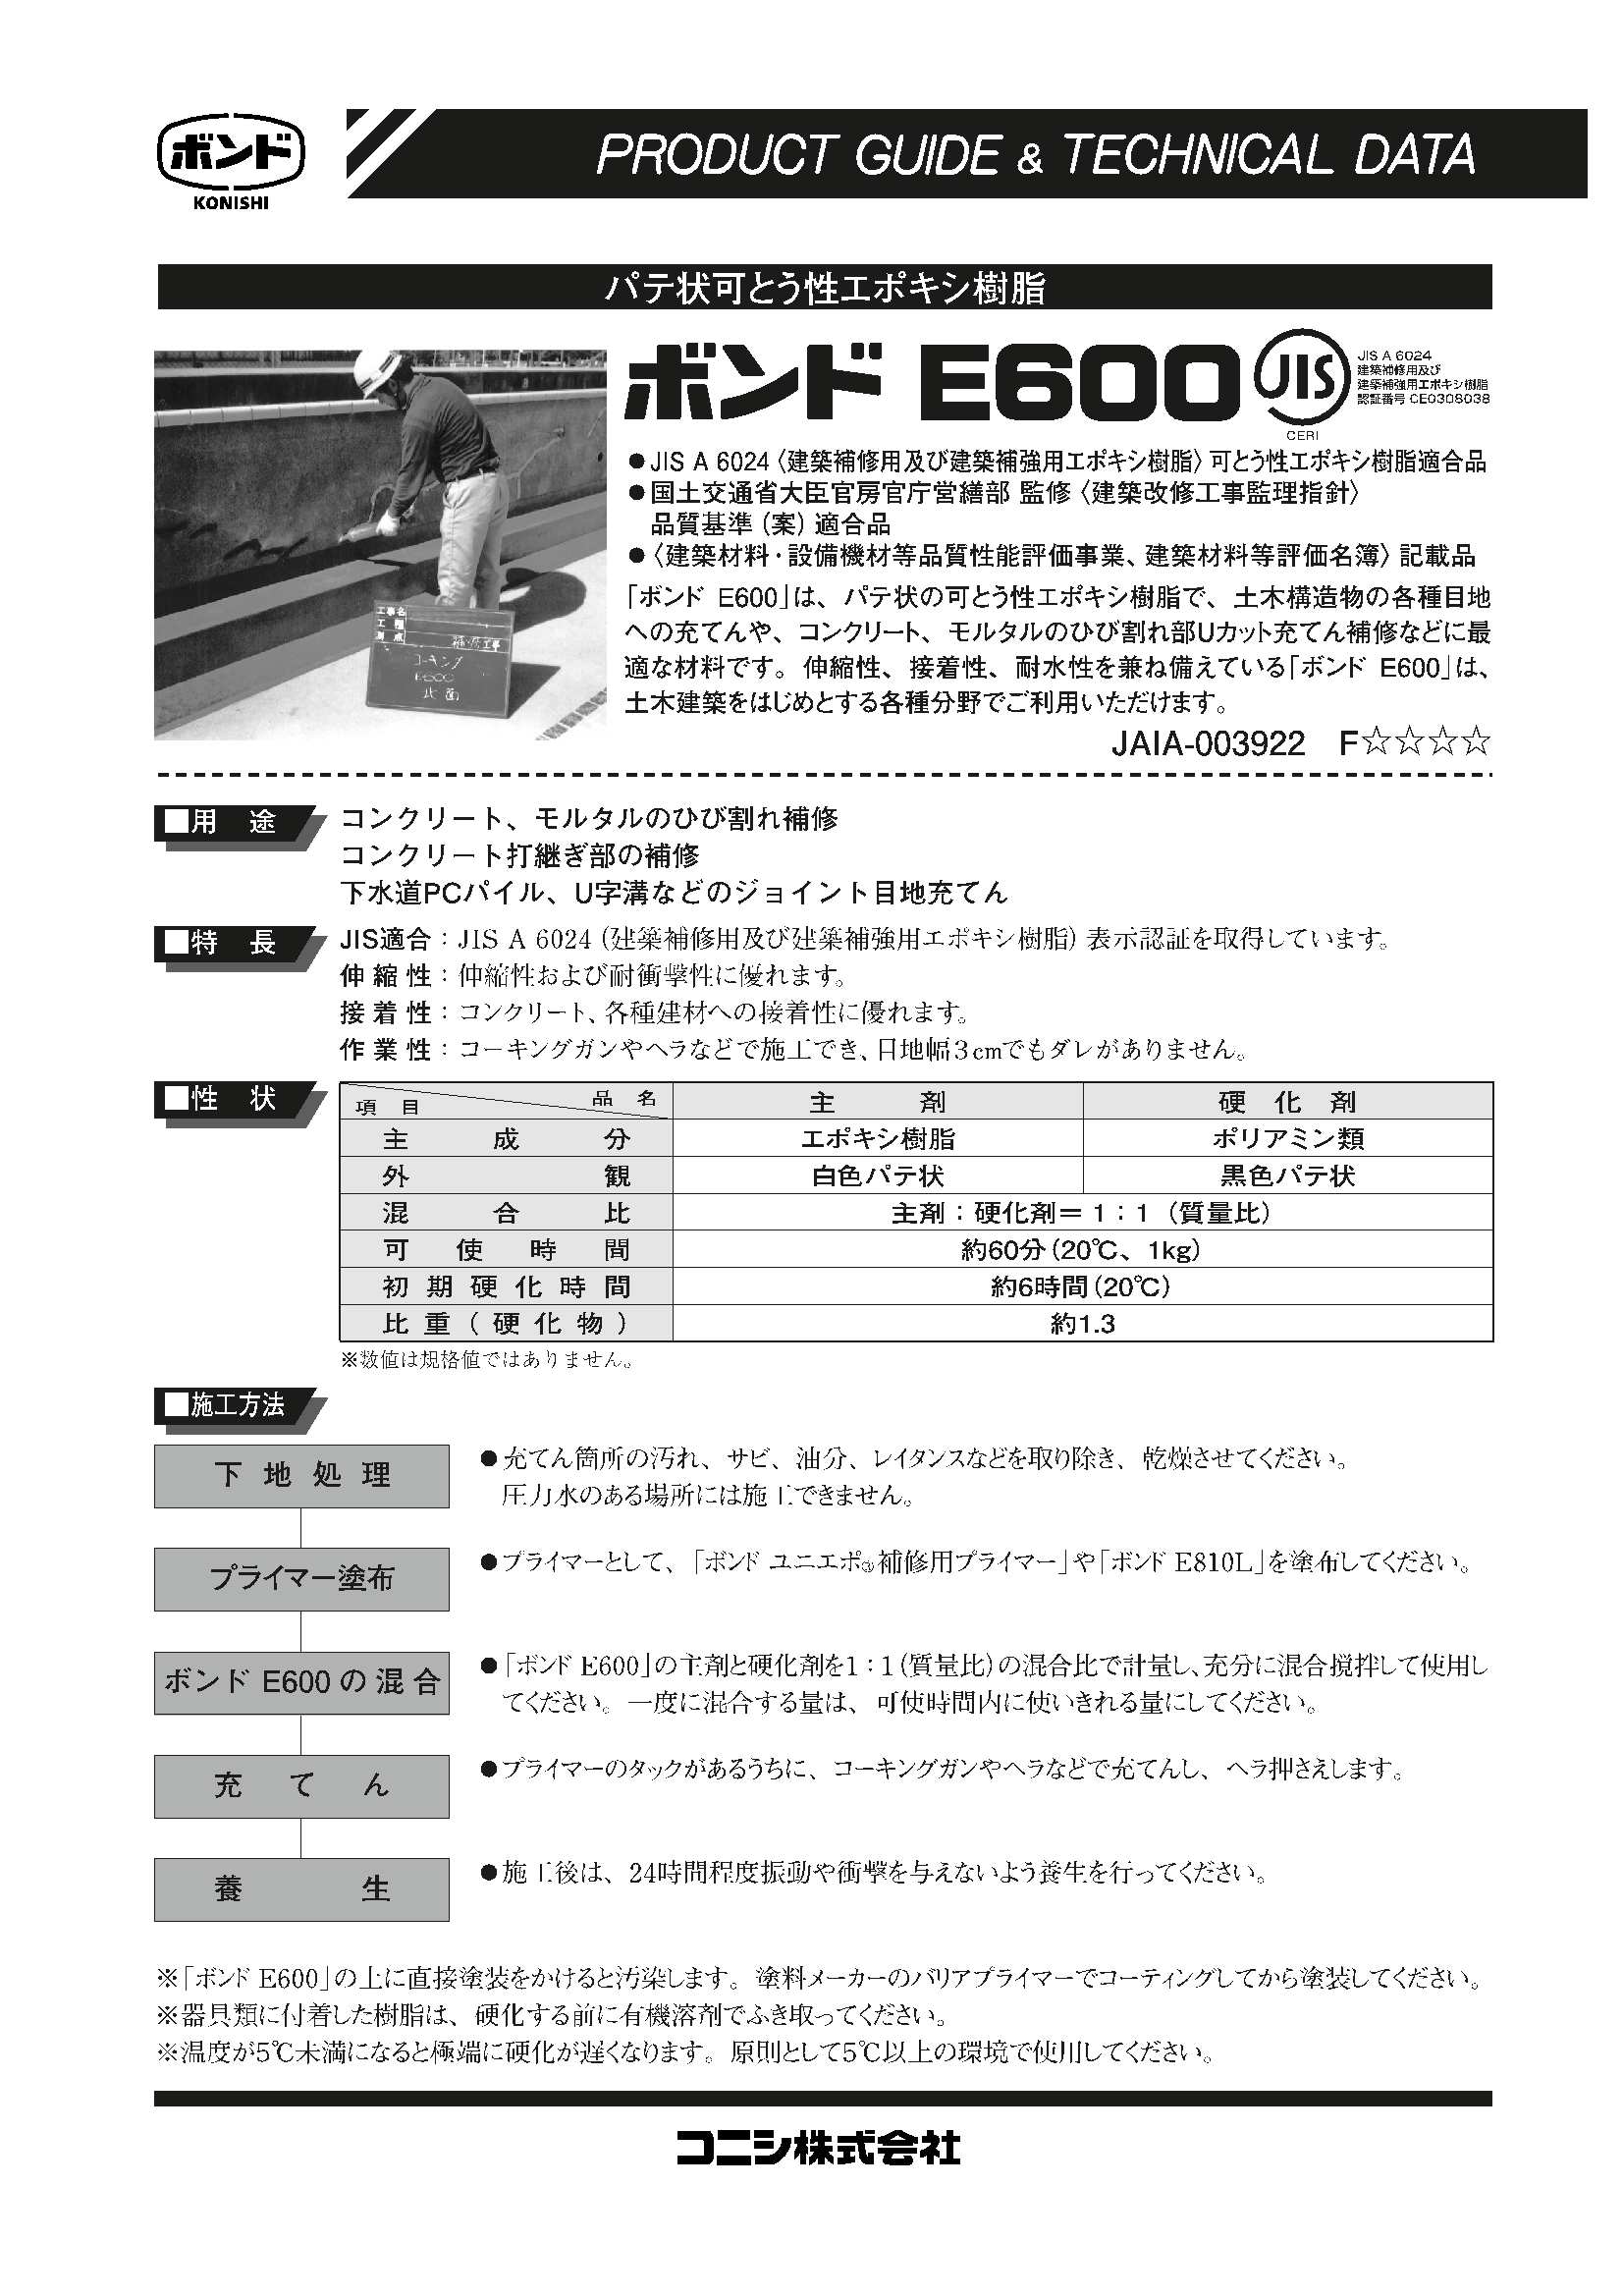 総合福袋 コニシボンド<br>ユニエポ補修用プライマー 500g